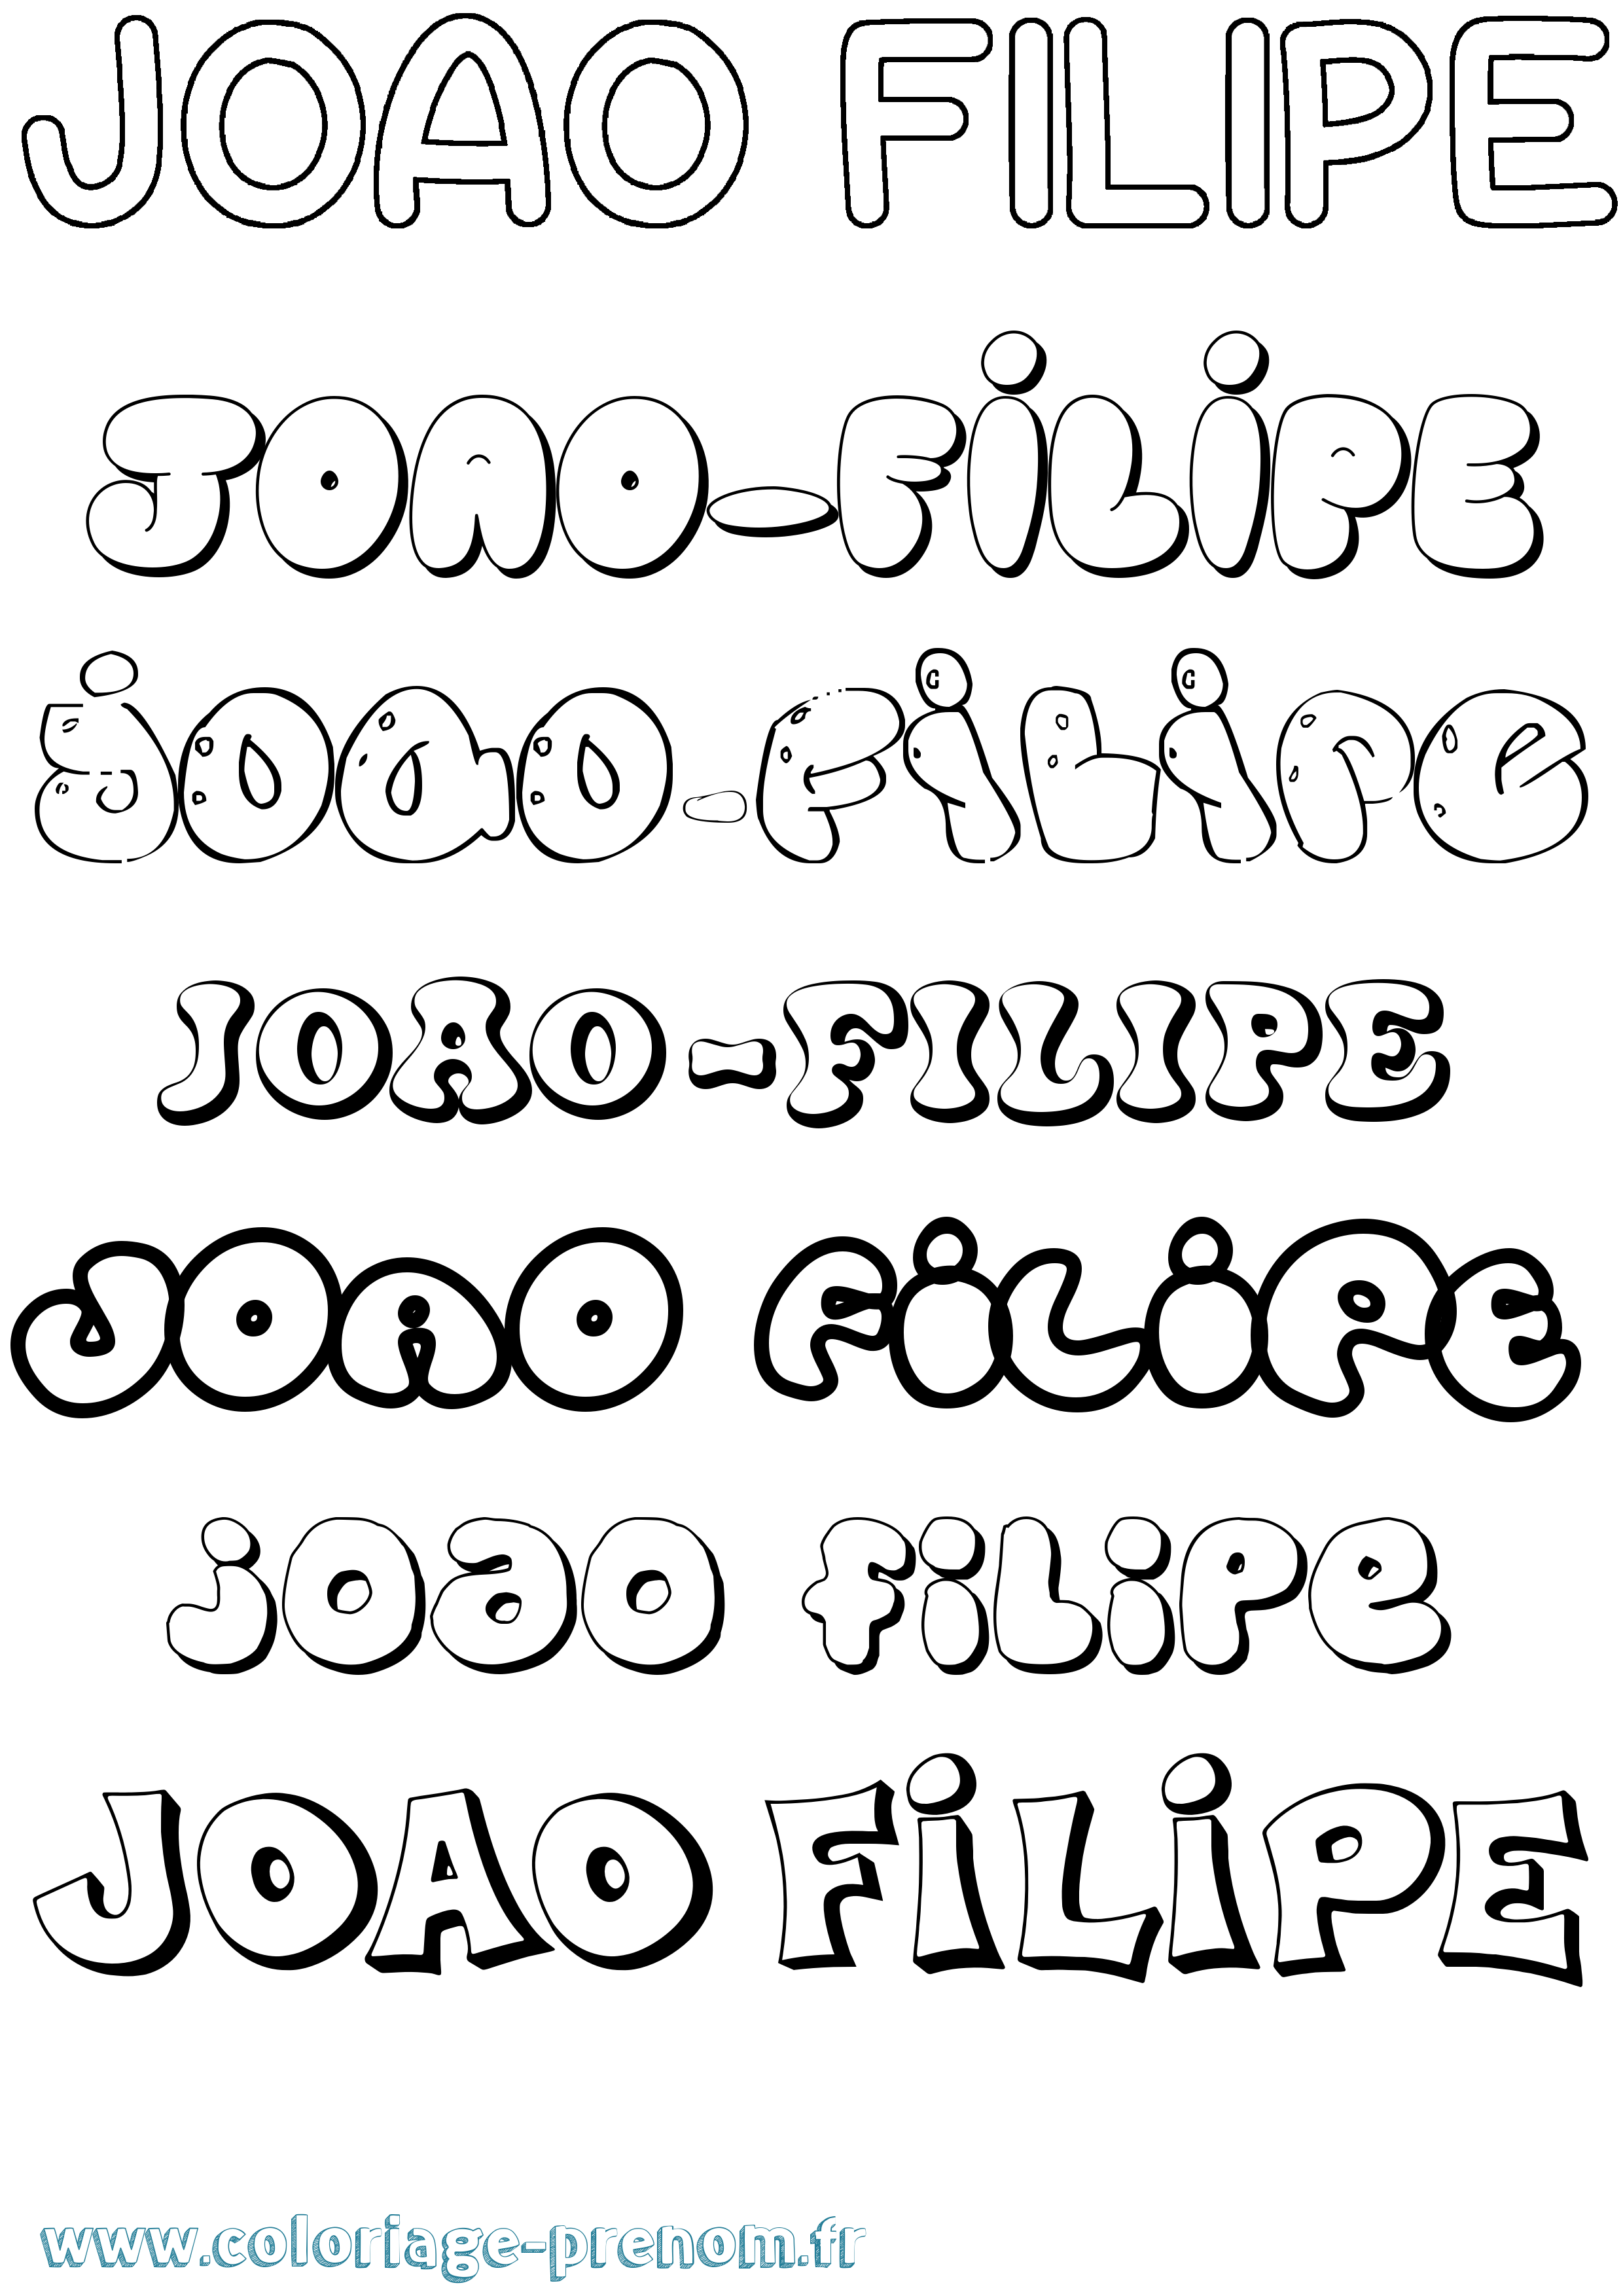 Coloriage prénom Joao-Filipe Bubble